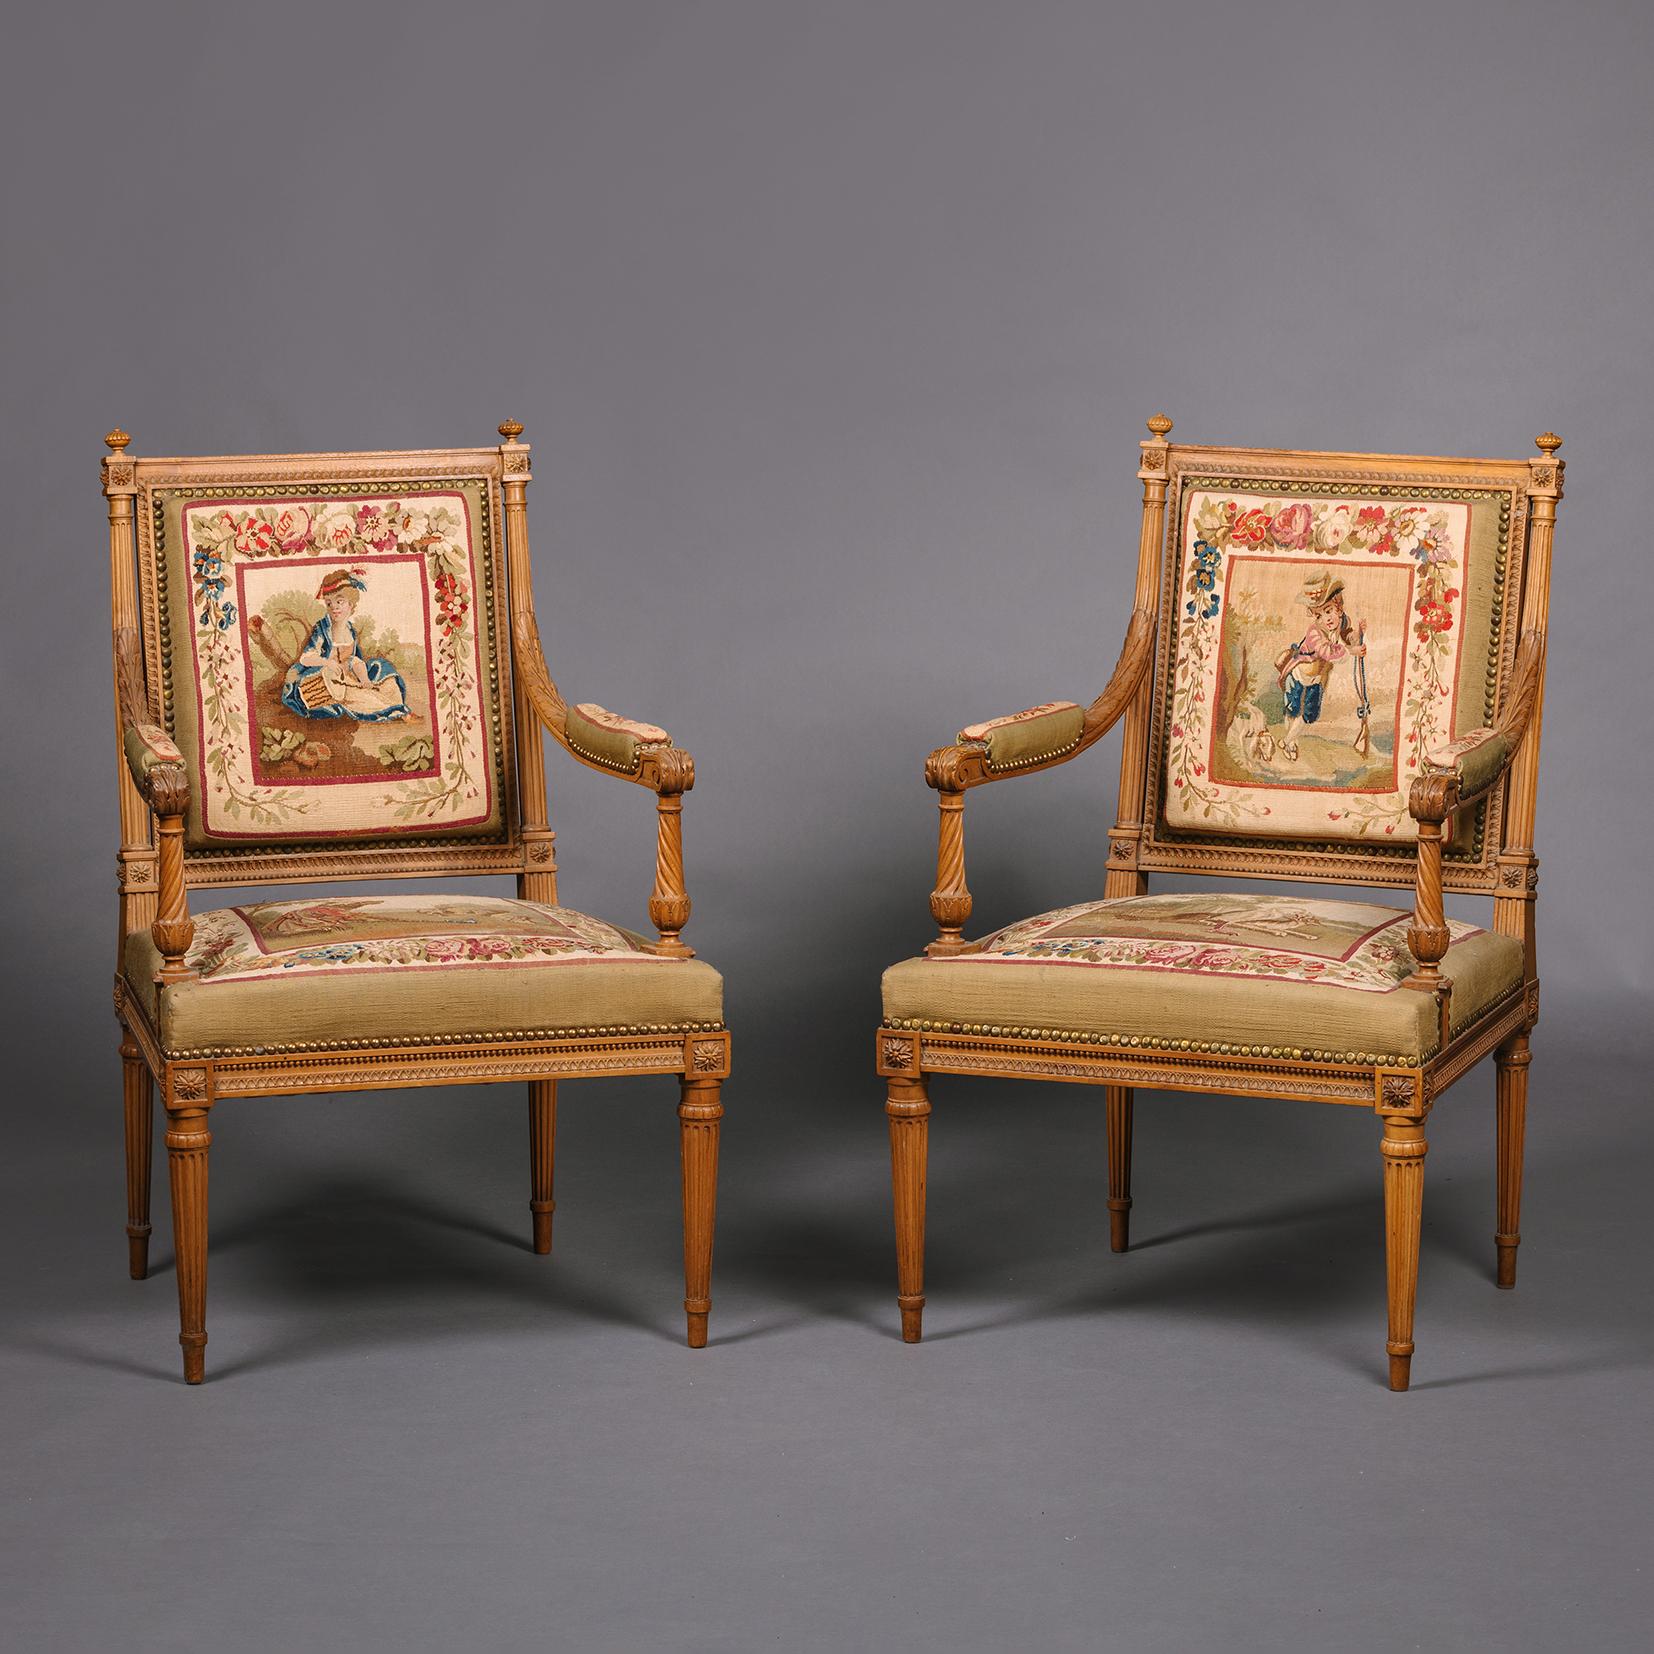 Salon de style Louis XVI en bois de hêtre et tapisserie d'Aubusson, composé de cinq pièces.

Comprenant un canapé et quatre fauteuils, les cadres en bois de hêtre finement sculptés de perles, de pétales stylisés et de feuilles d'acanthe, sur des